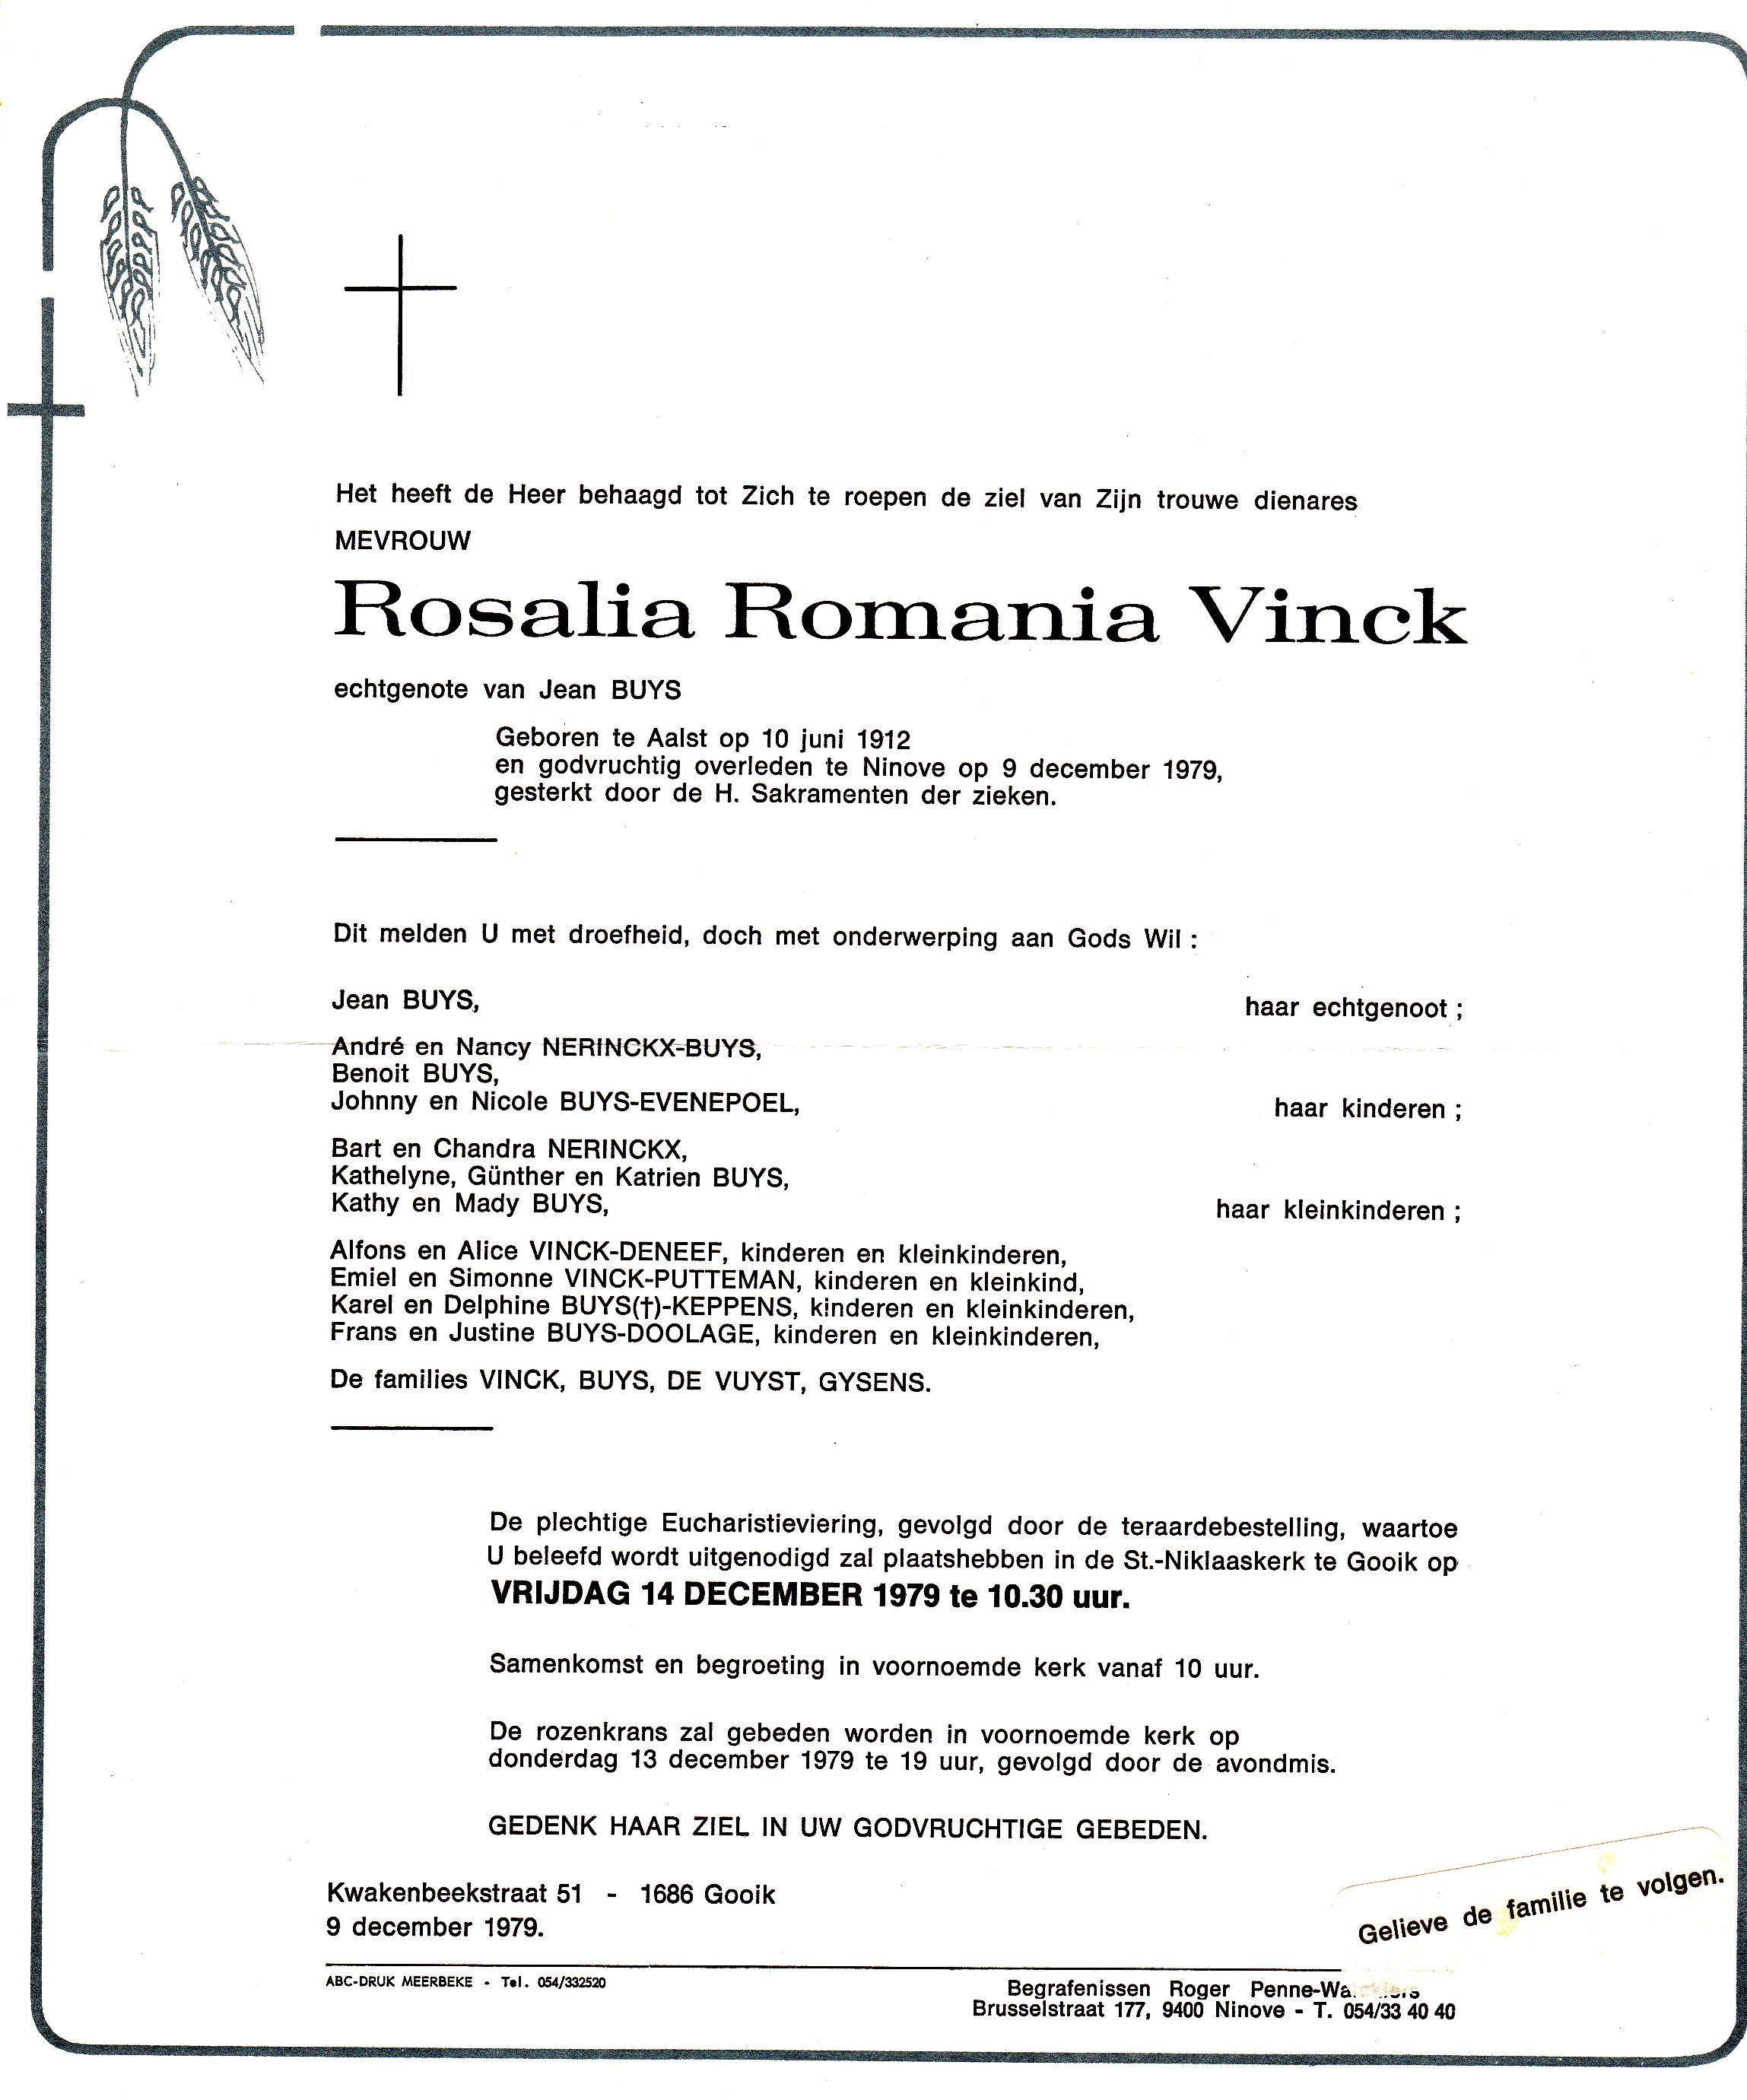 Vinck Rosalia Romania  